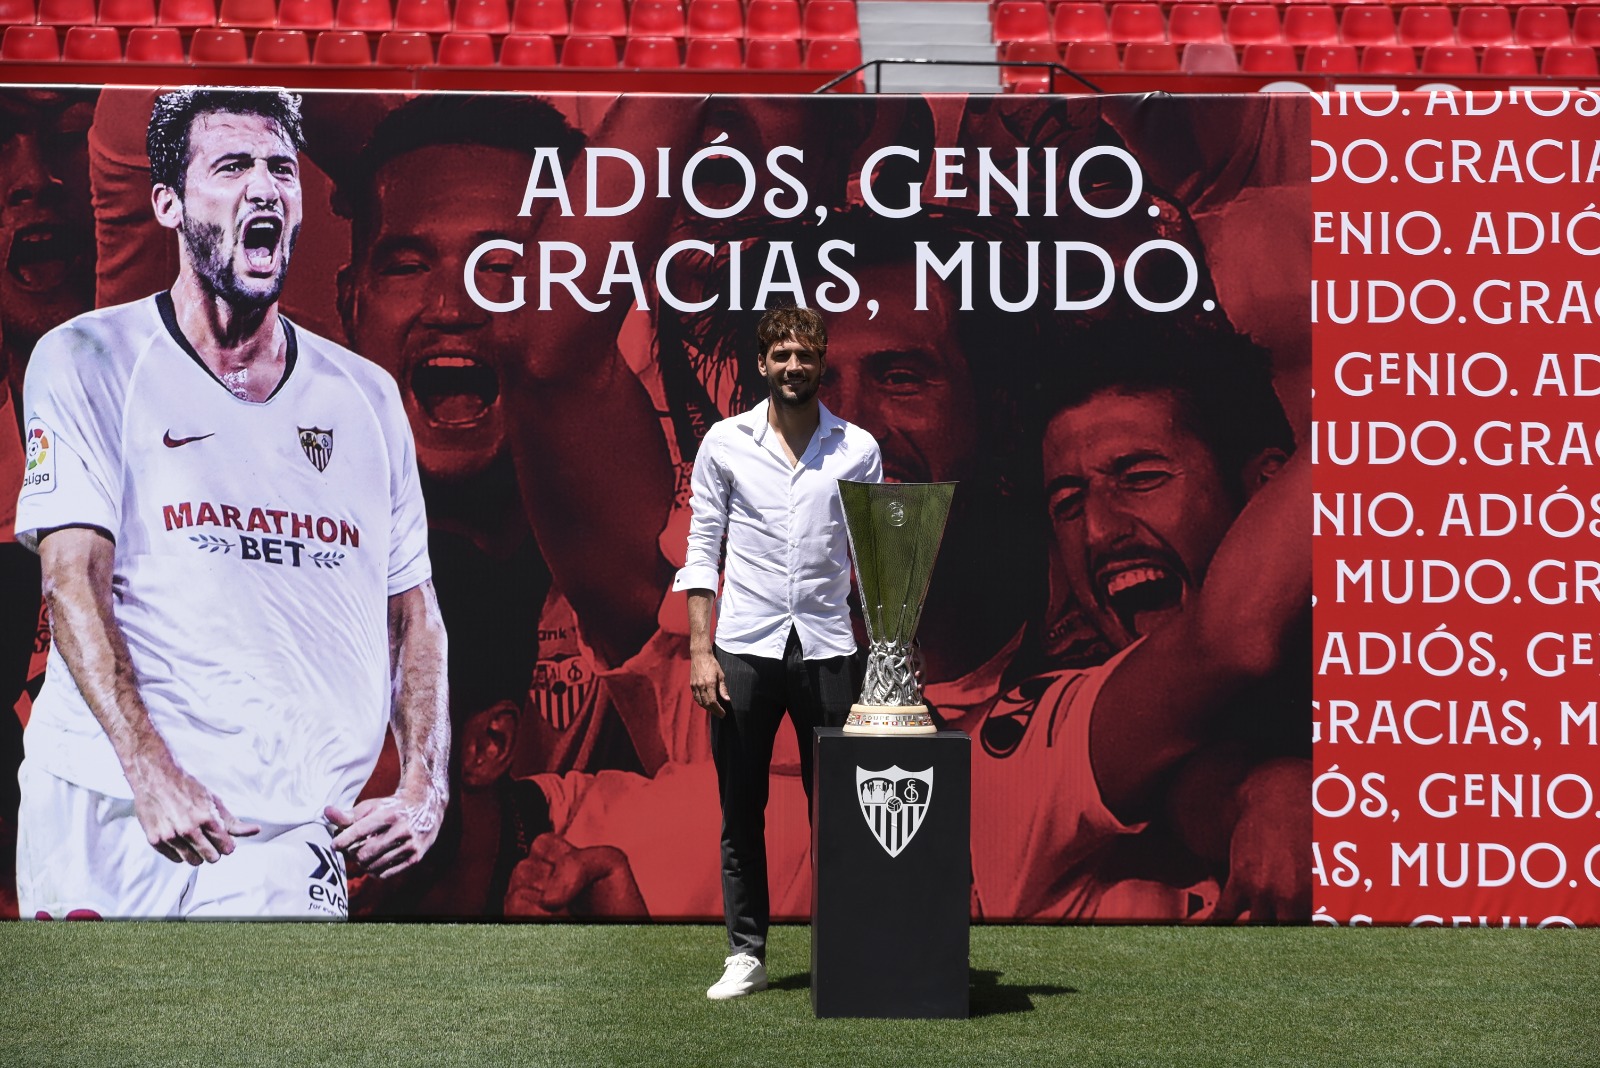 Mudo Vázquez says goodbye to Sevilla FC